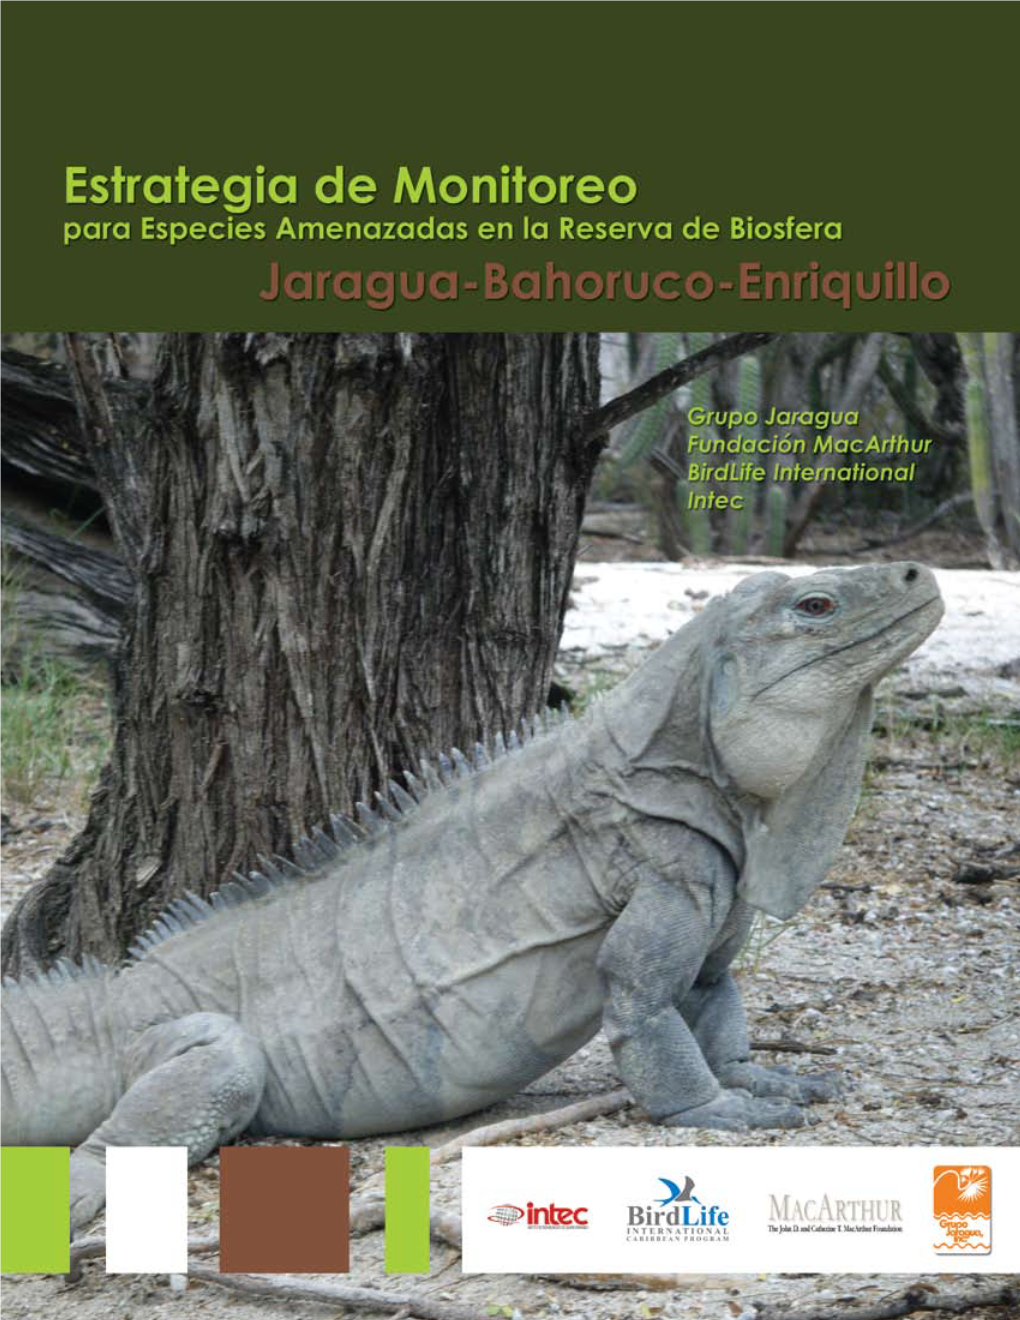 Estrategia De Monitoreo Para Especies Amenazadas De La Reserva De Biosfera Enriquillo-Bahoruco-Jaragua